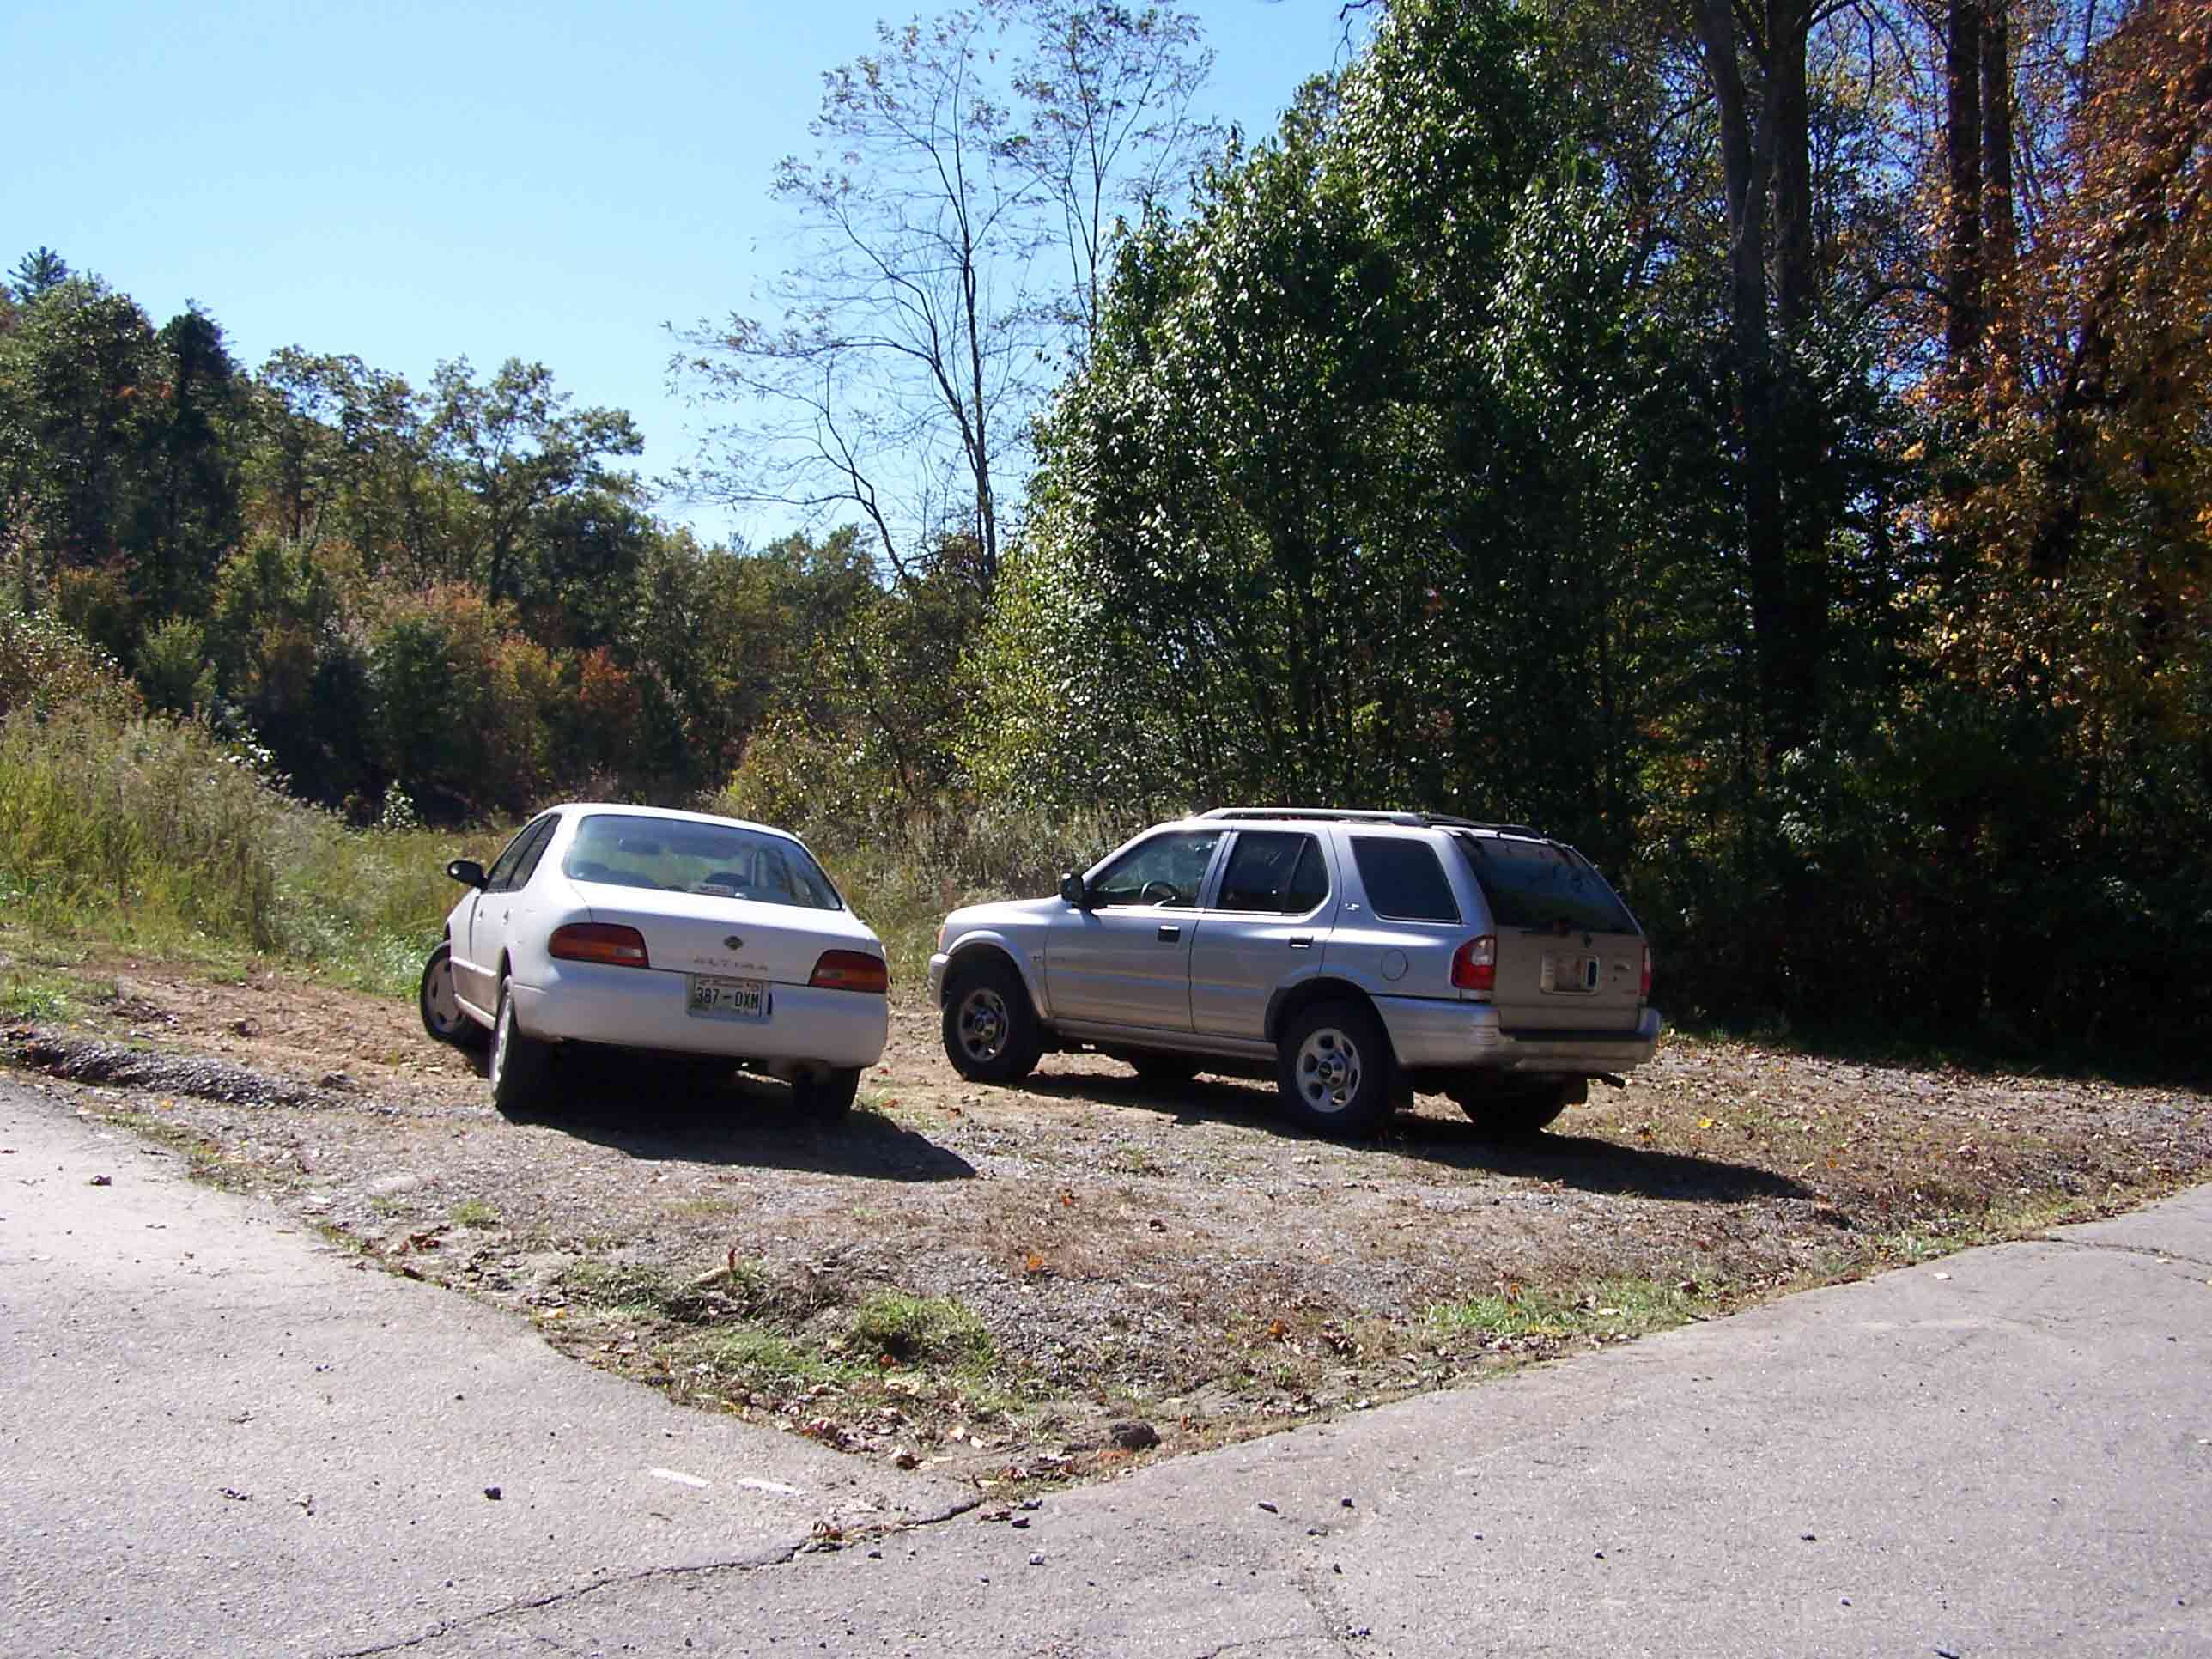 mm 8.8 - Parking at Tanyard Gap. Courtesy at@rohland.org